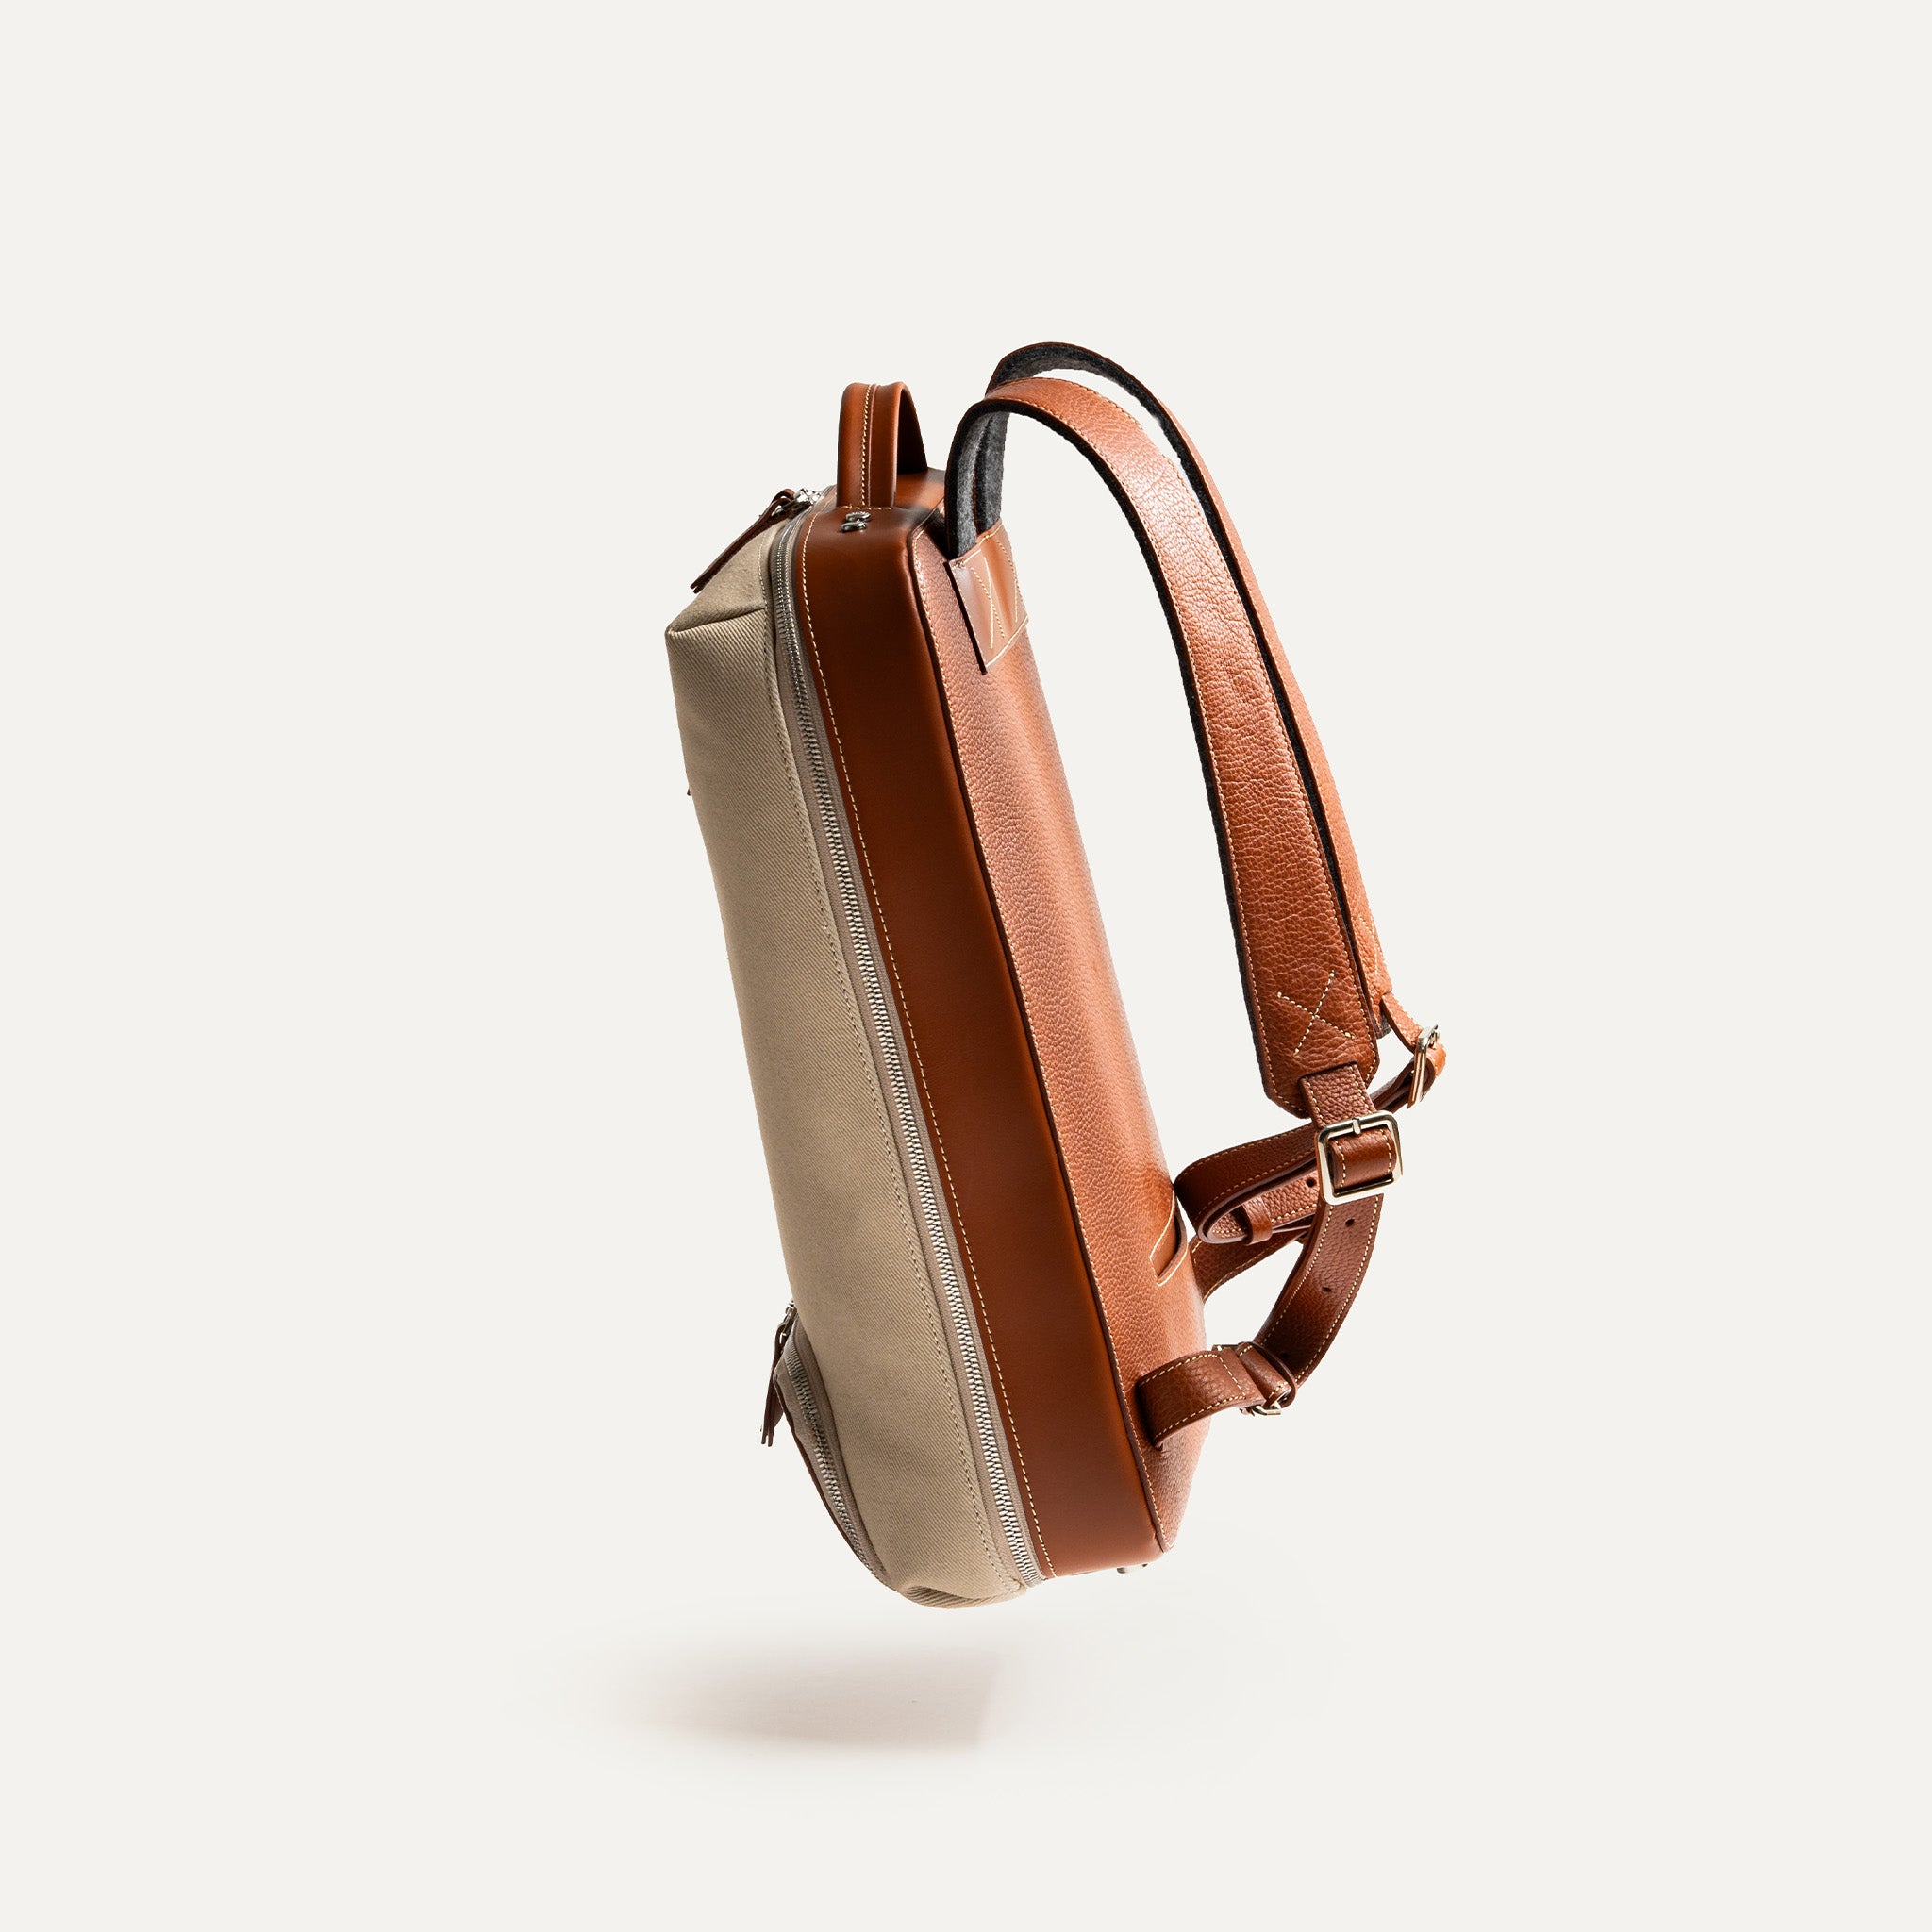 Avec ses 4 poches en néoprène, ce sac est parfaitement équipé pour ranger vos accessoires de bureau en toute sécurité, tandis que les 2 poches plaquées sont idéales pour organiser vos cartes de visite lors de vos déplacements professionnels.